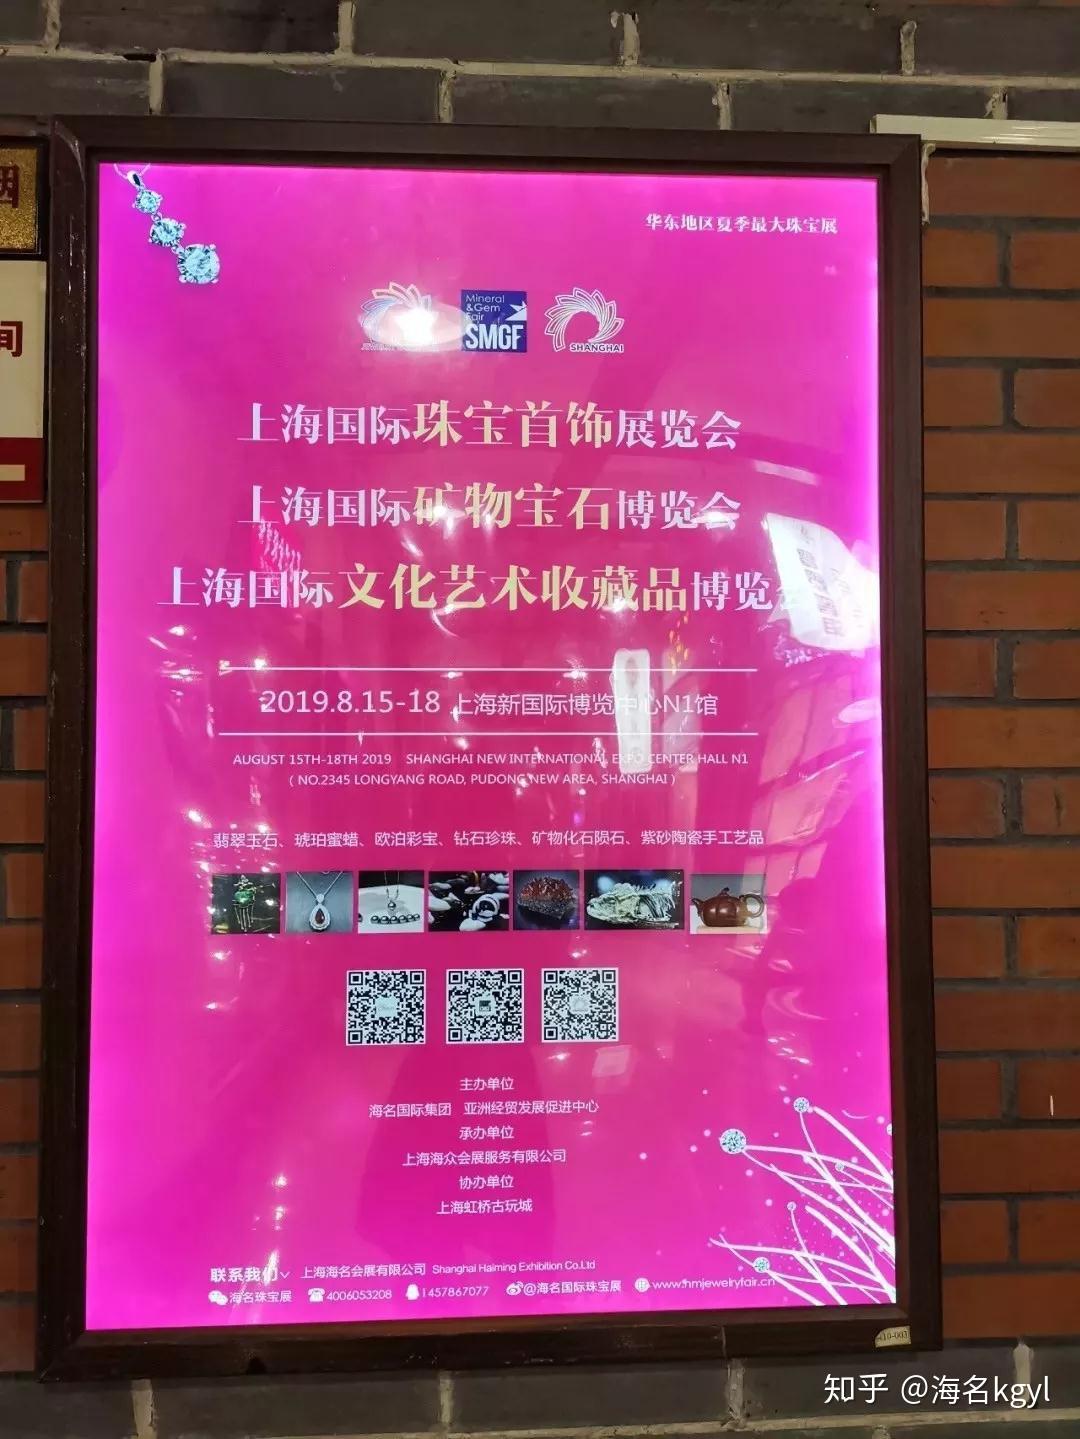 2014年9月香港珠宝首饰展览会(2004年香港国际珠宝展被盗会展案例)